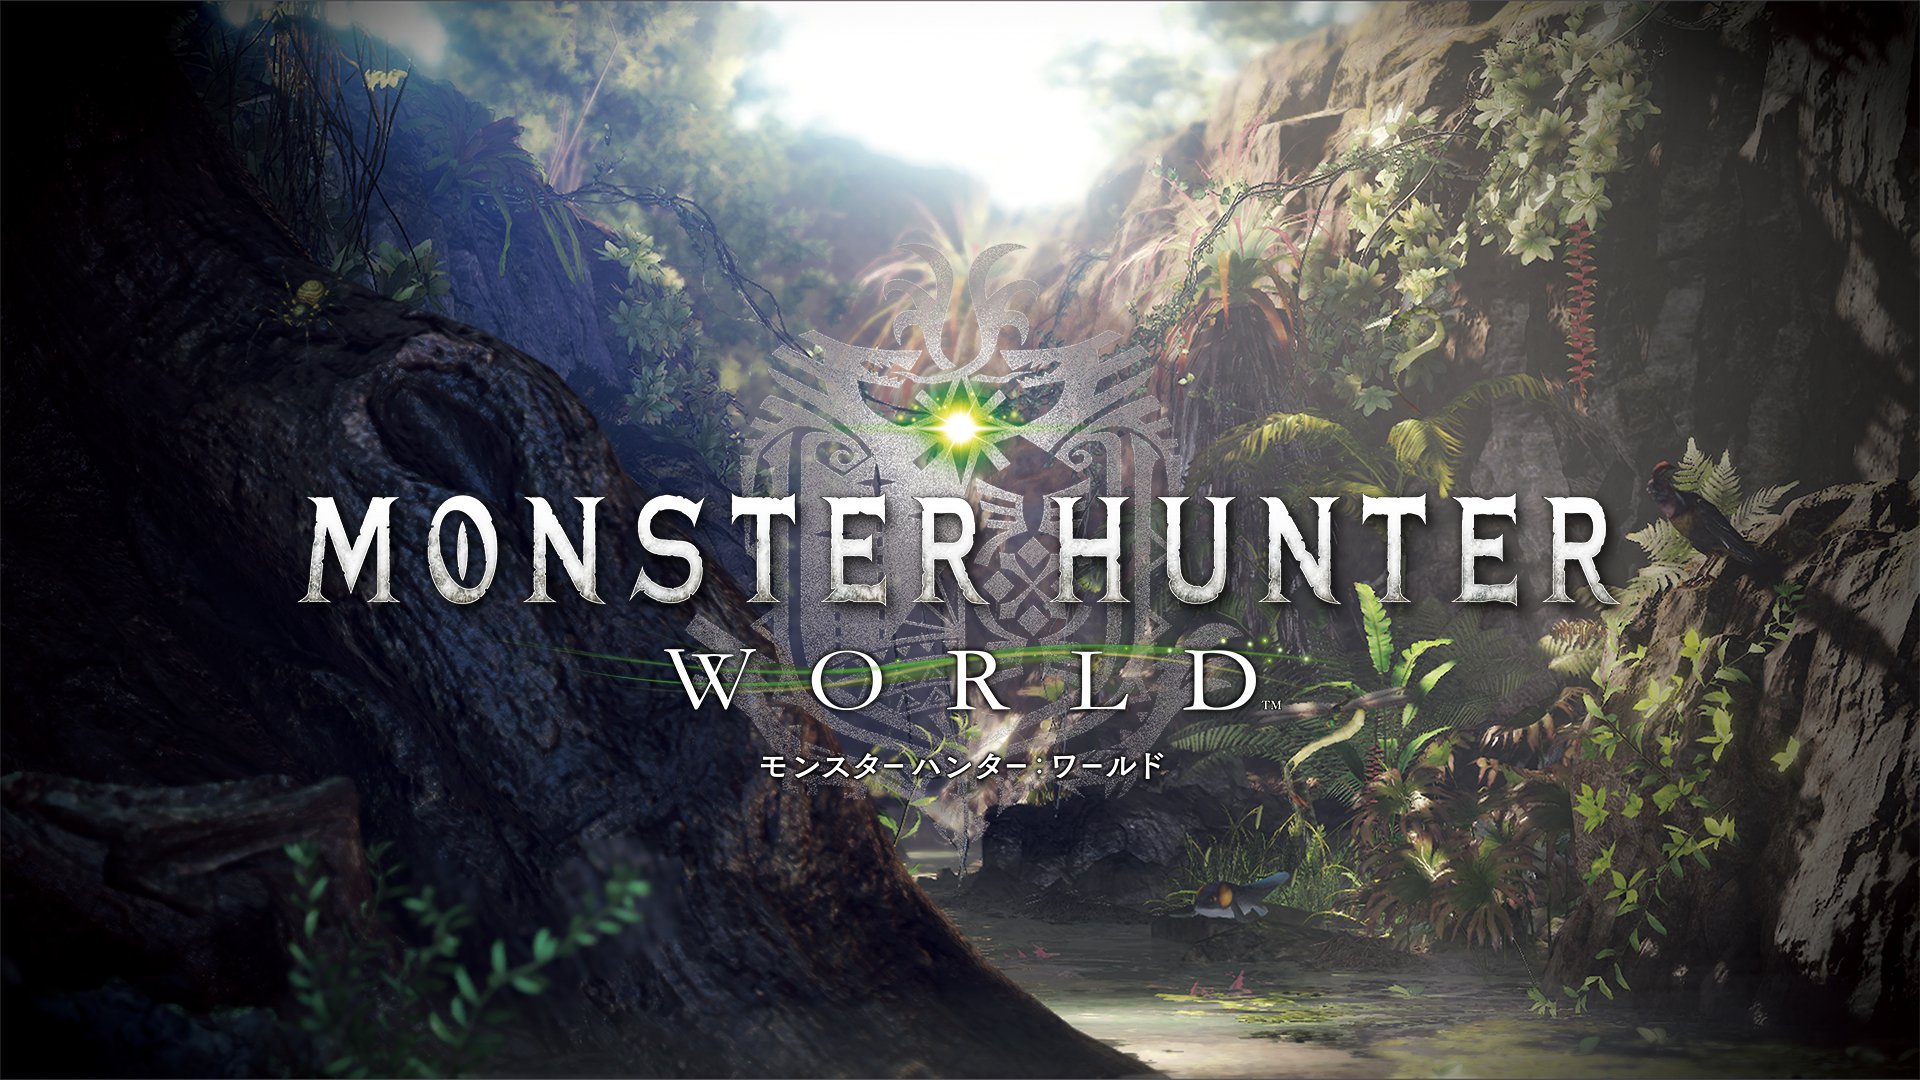 جدول فروش هفتگی بریتانیا | شروع پرقدرت بازی Monster Hunter World